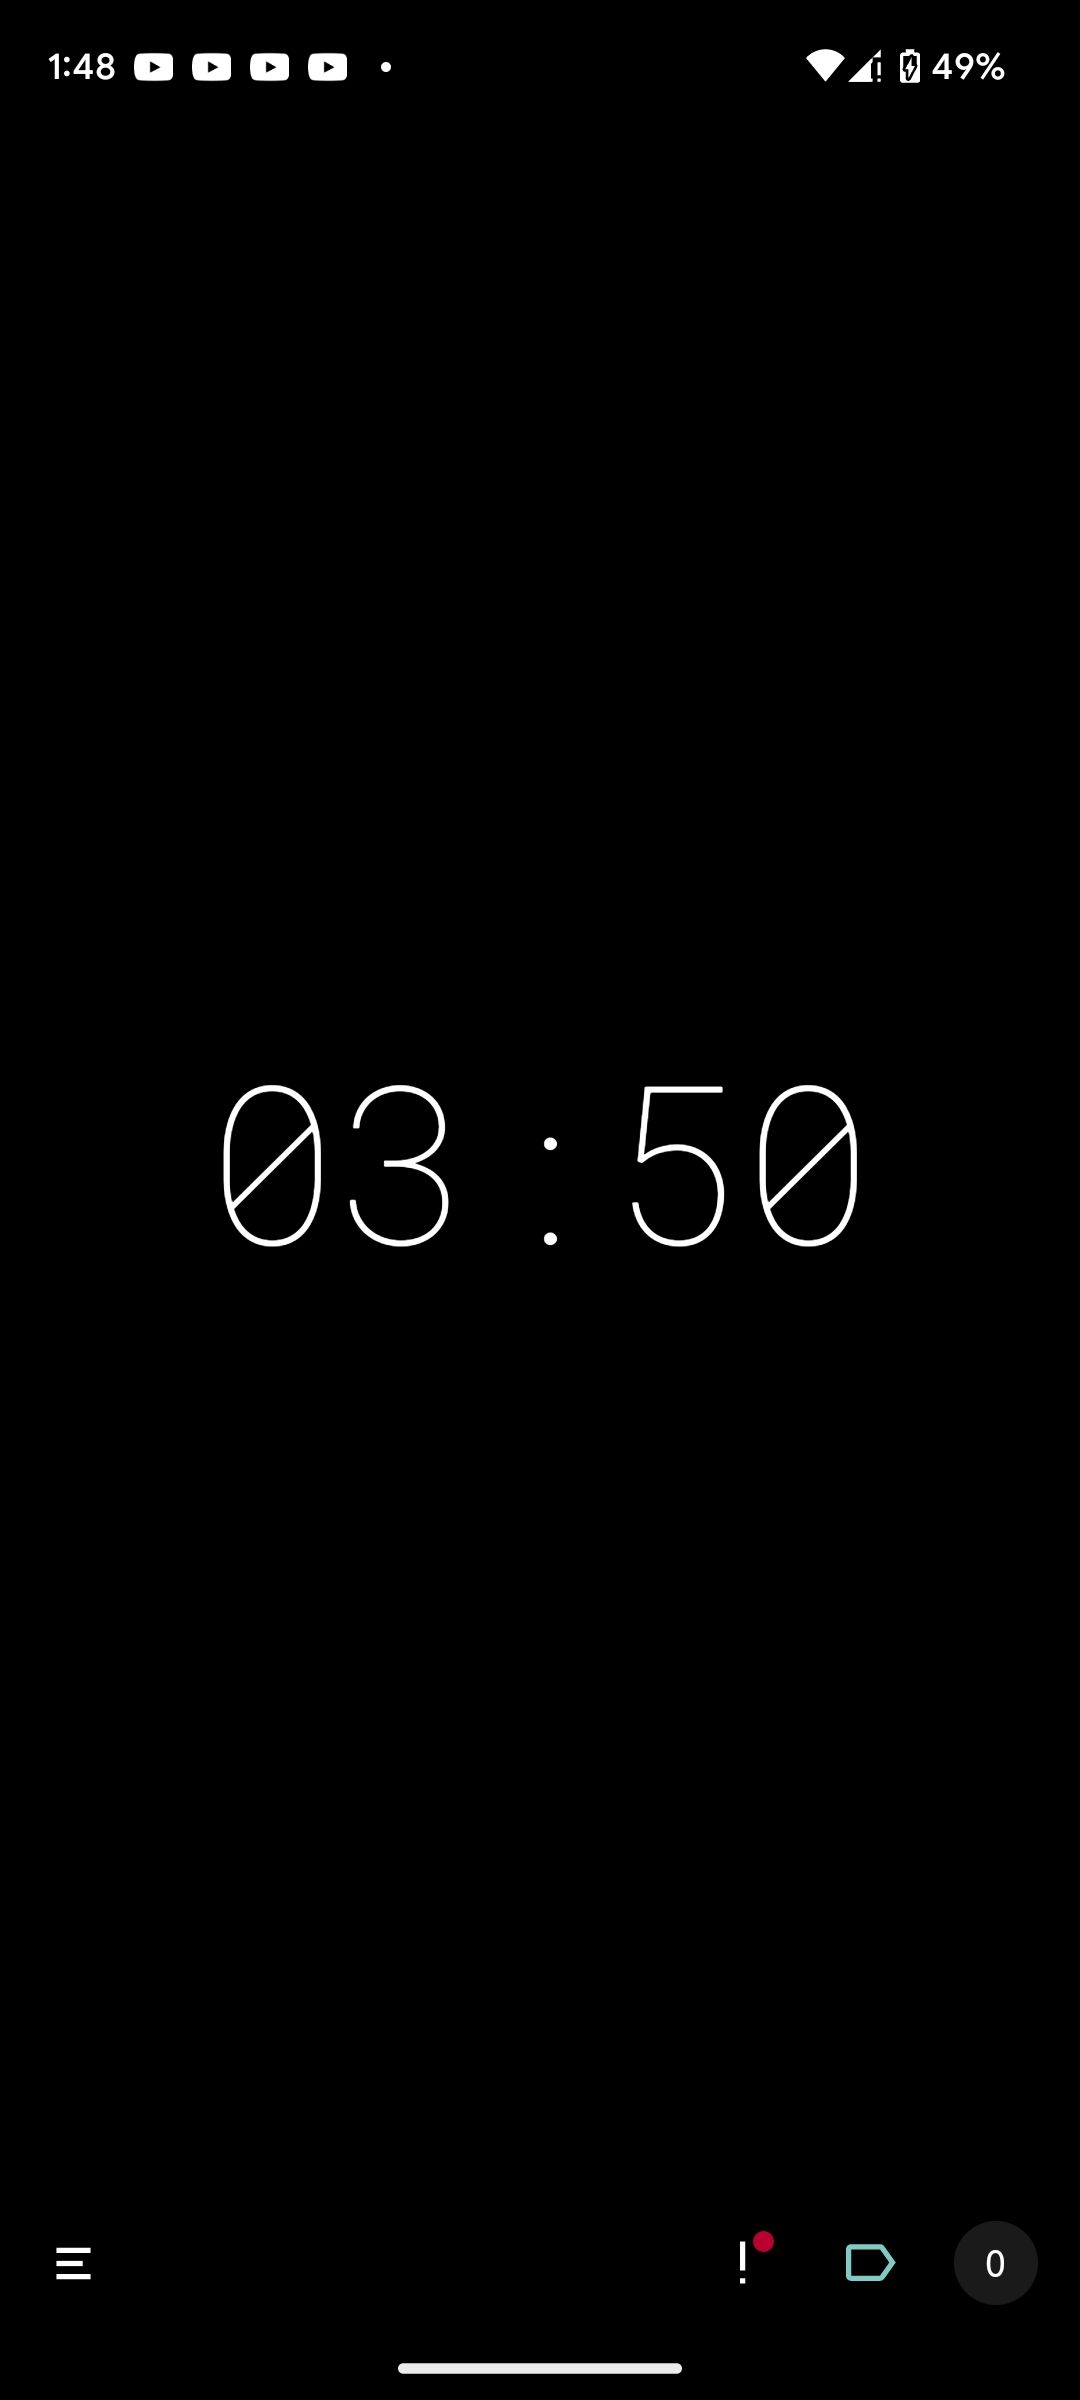 A timer running in Minimalist Pomodoro Timer app